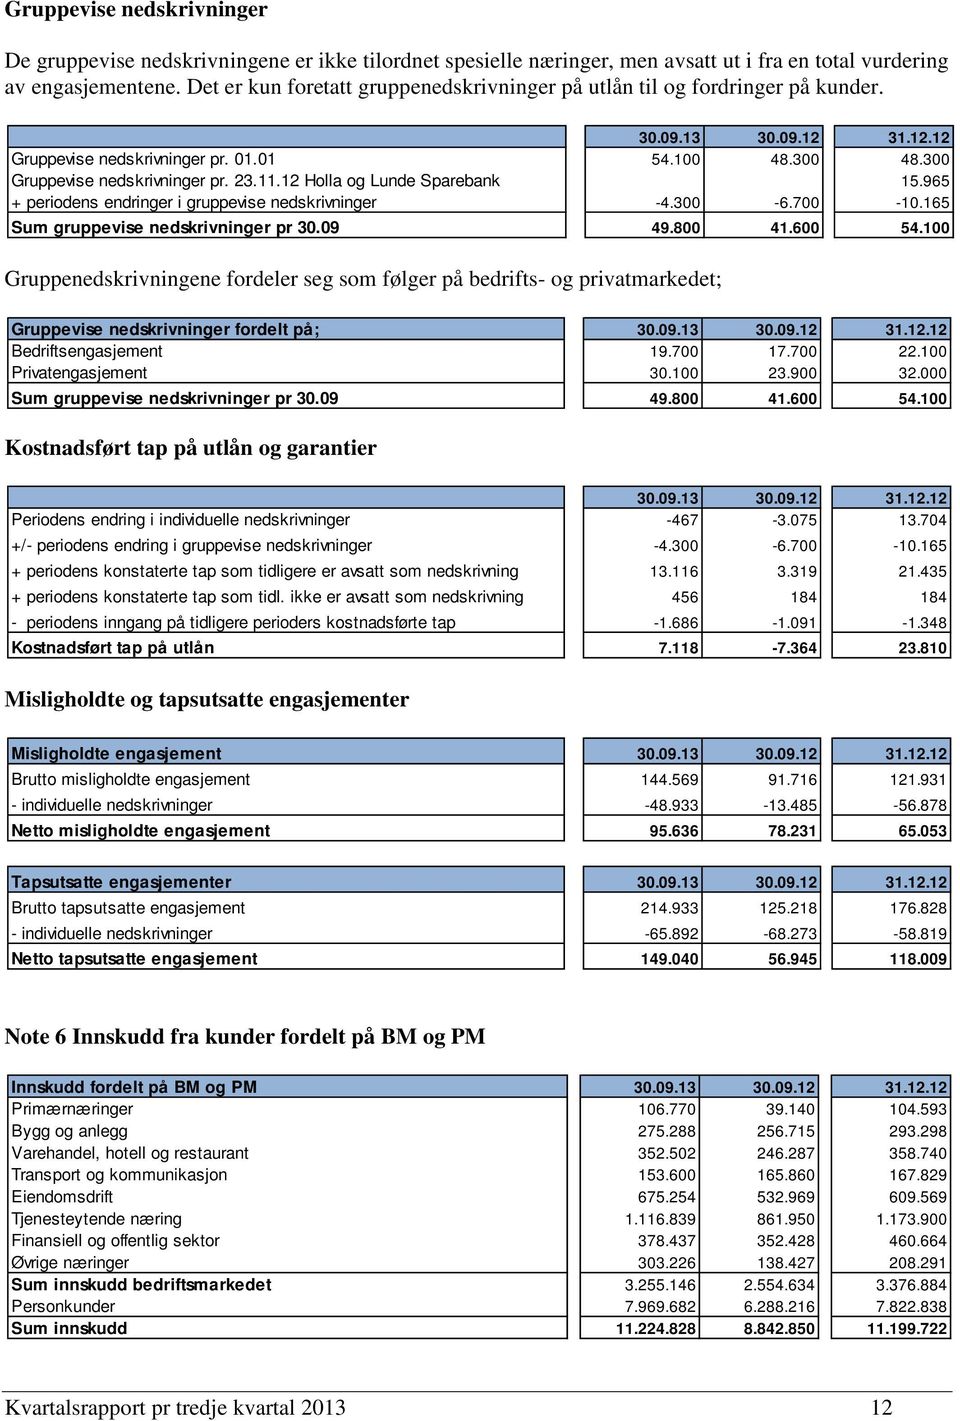 12 Holla og Lunde Sparebank 15.965 + periodens endringer i gruppevise nedskrivninger -4.300-6.700-10.165 Sum gruppevise nedskrivninger pr 30.09 49.800 41.600 54.